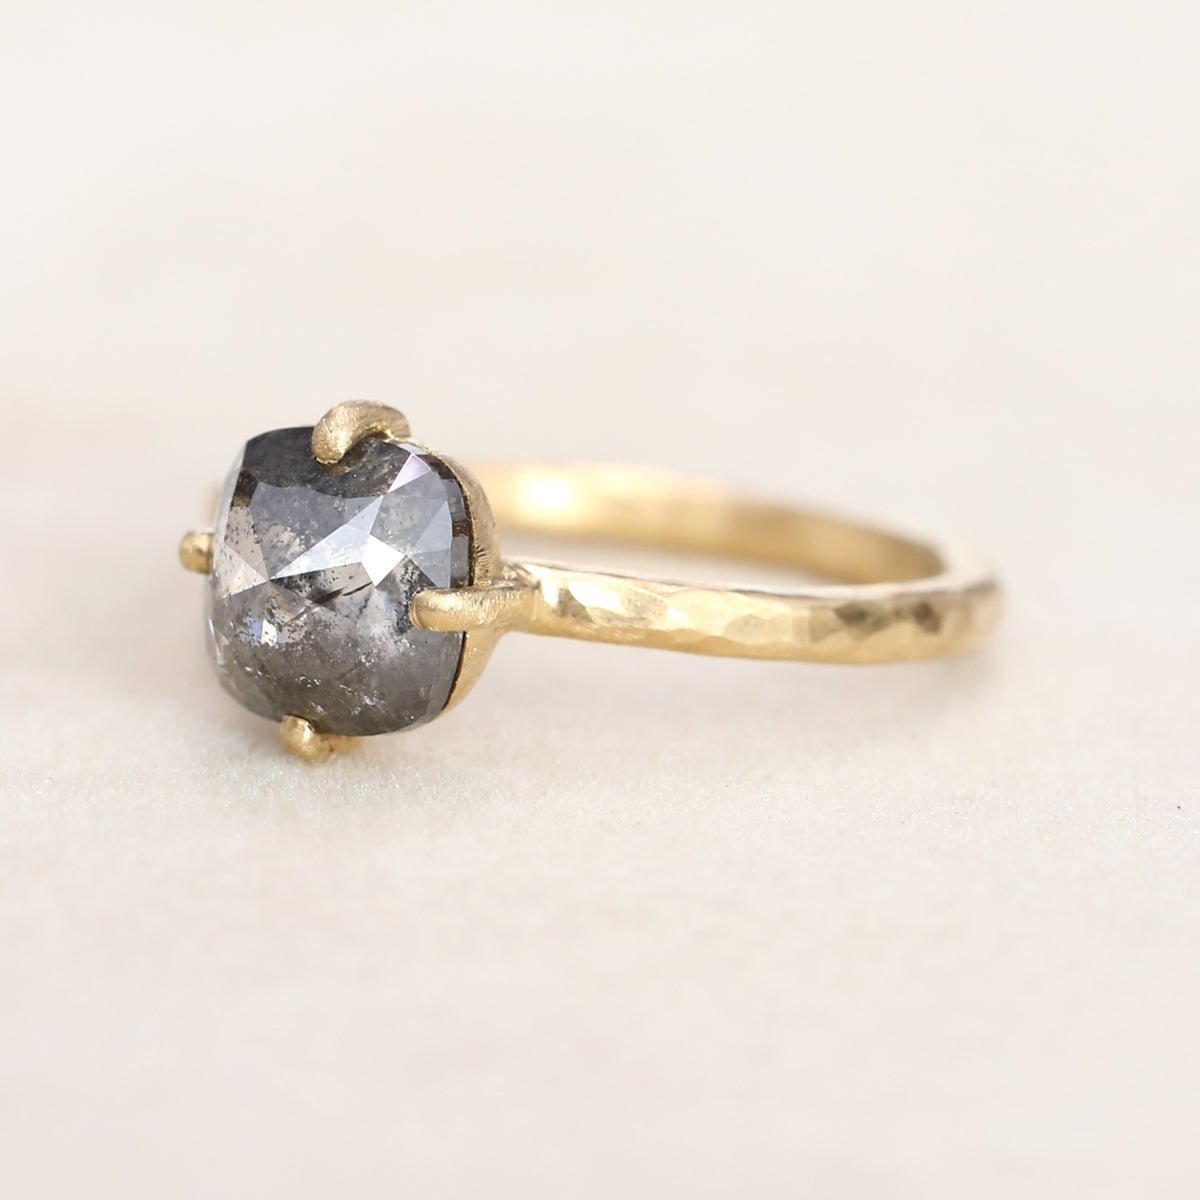 1.73 dark grey diamond ring